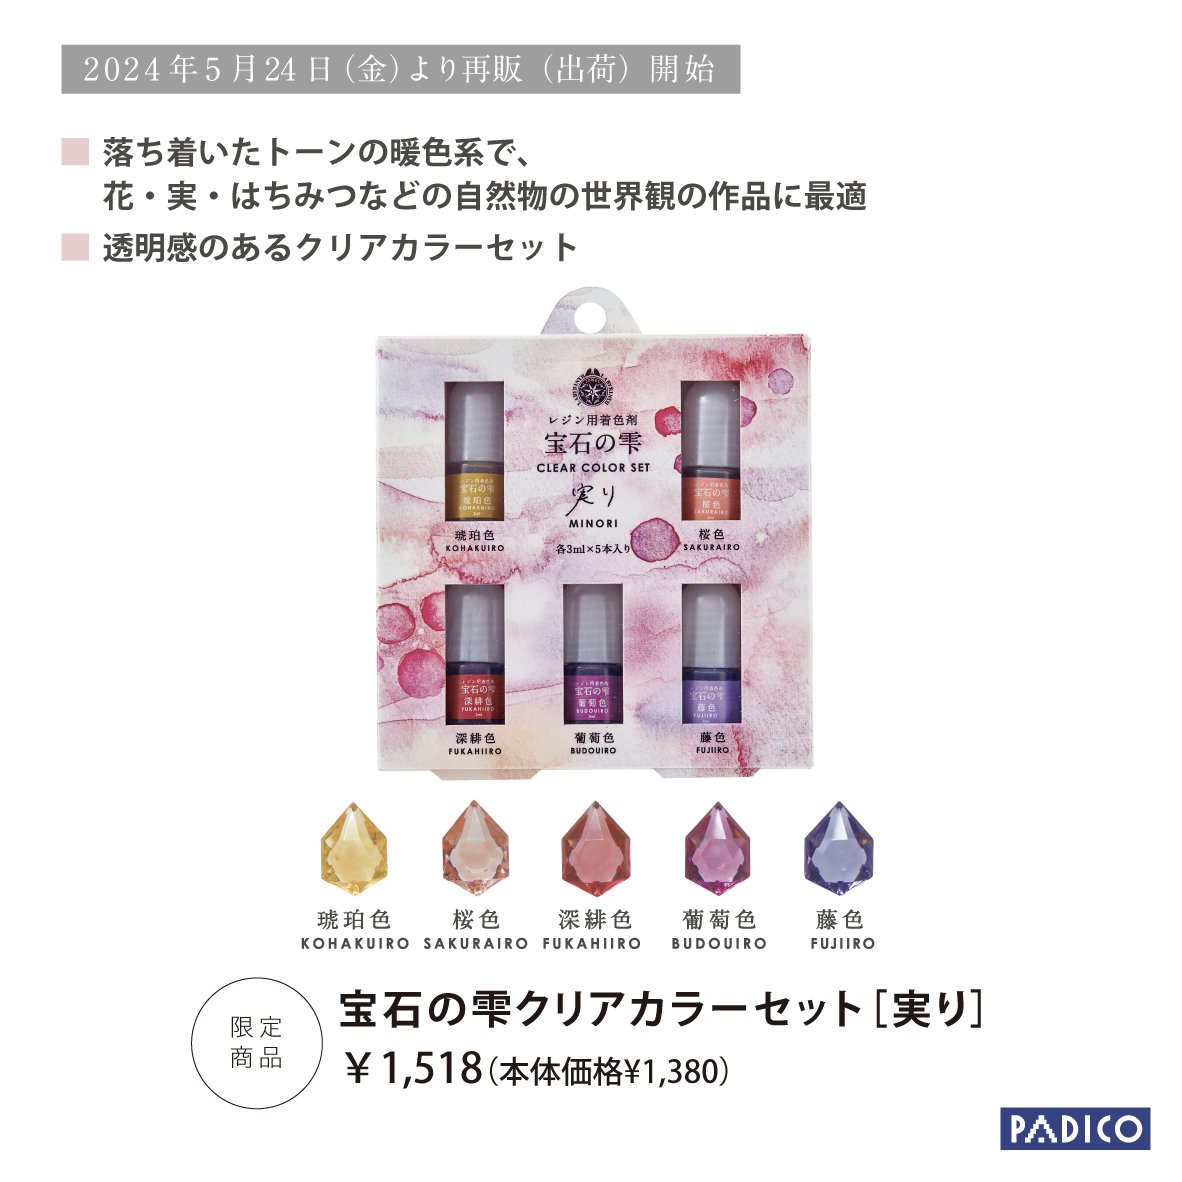 【お客様の声により、限定再販‼️2024年5月24日(金)より出荷開始📢】 日本の伝統色のレジン用着色剤のセット✨ 「宝石の雫クリアカラーセット［実り］」の「琥珀色」を使用した作品。 作品制作：キムラプレミアム様(@k_i_m_u_r_a) 再販商品の詳細👇 padico.co.jp/products/new20…